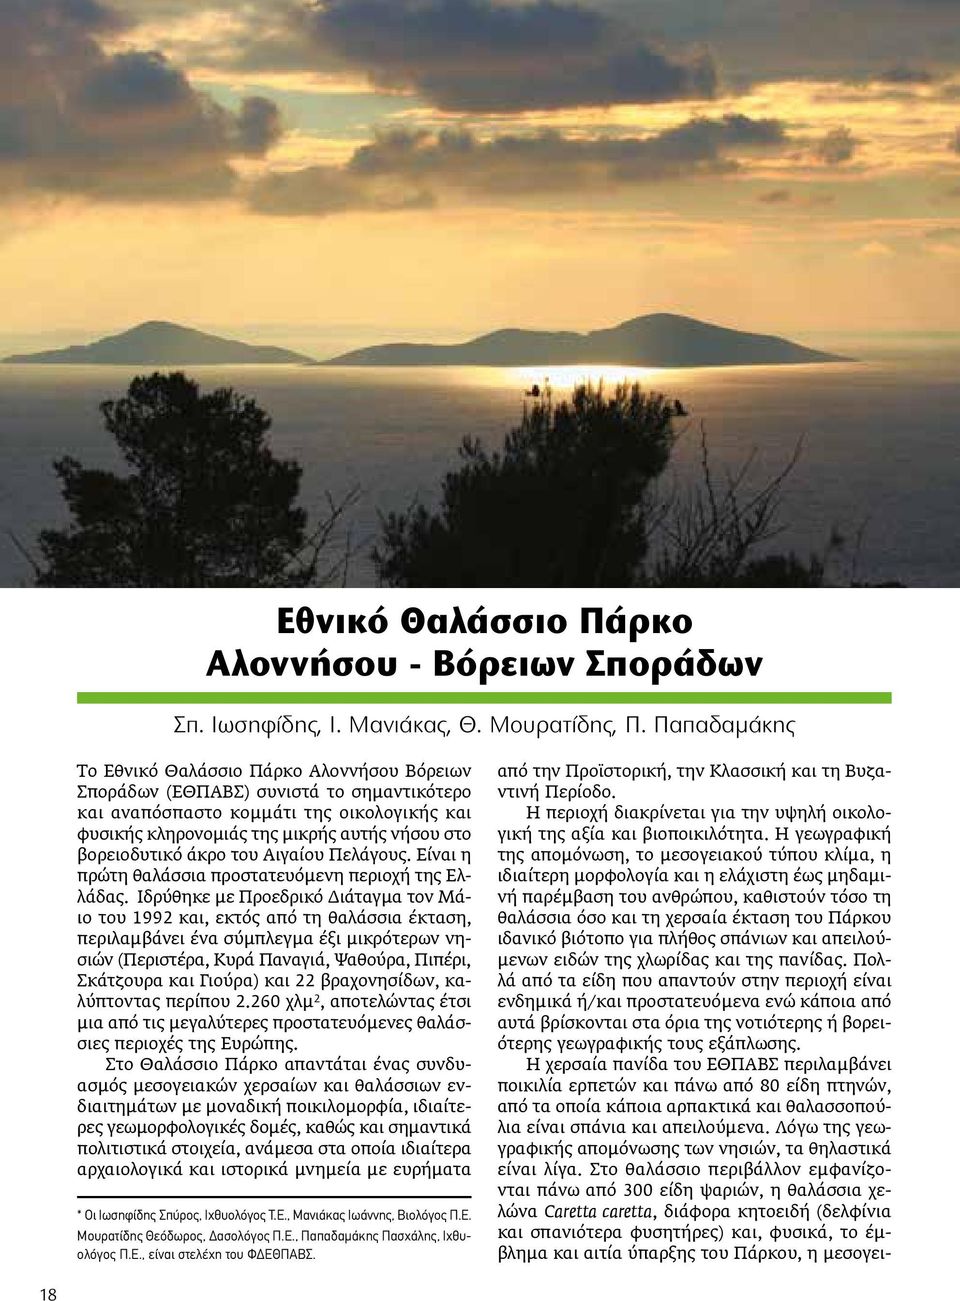 βορειοδυτικό άκρο του Αιγαίου Πελάγους. Είναι η πρώτη θαλάσσια προστατευόμενη περιοχή της Ελλάδας.